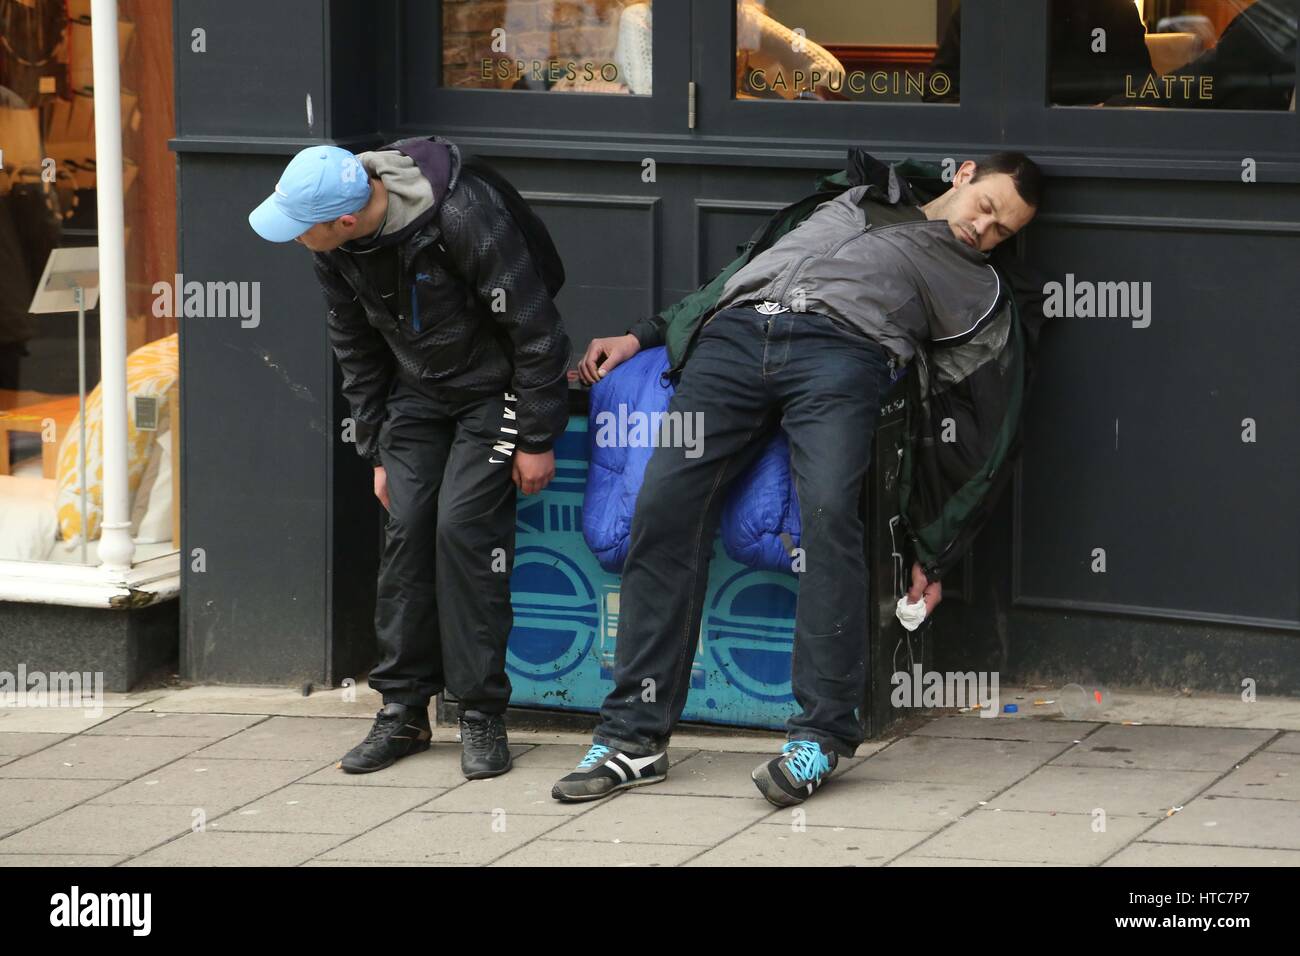 La droga in Brighton East Sussex, giovani uomini nel centro della città che mostra tutti i segni dell'assunzione della droga sintetica di spezie. Foto Stock